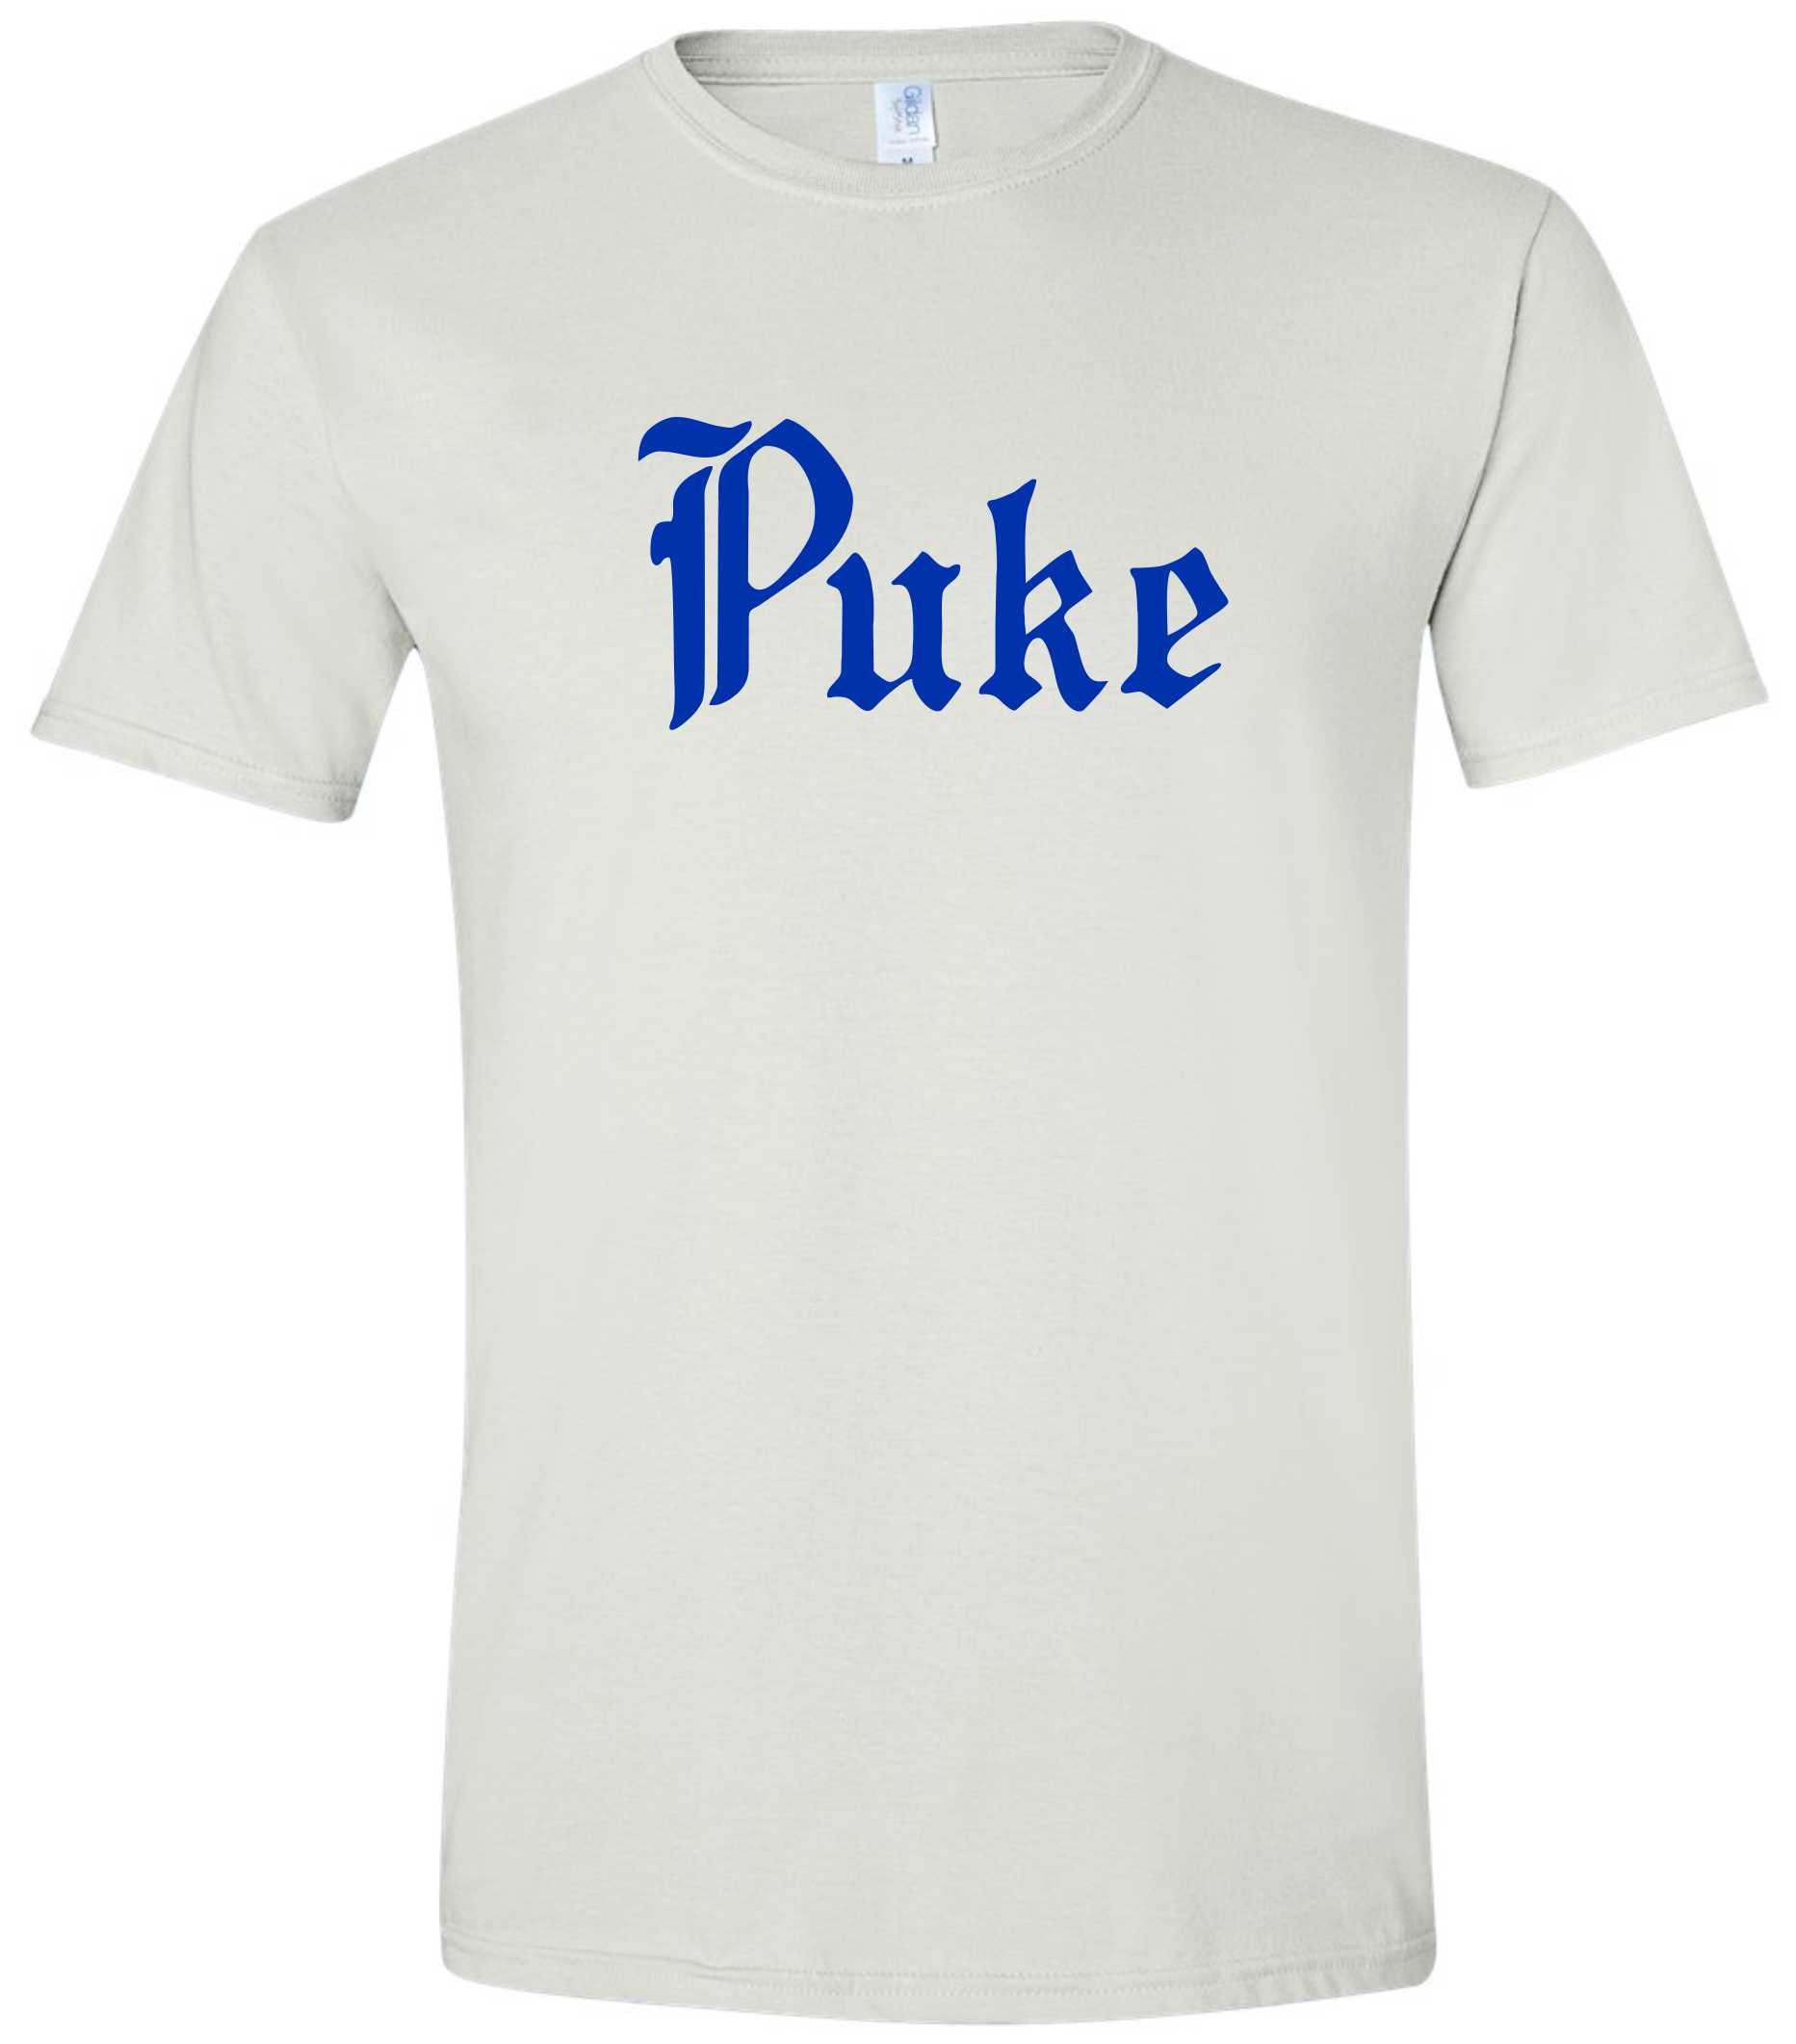 Puke Anti-Duke Funny T-shirt